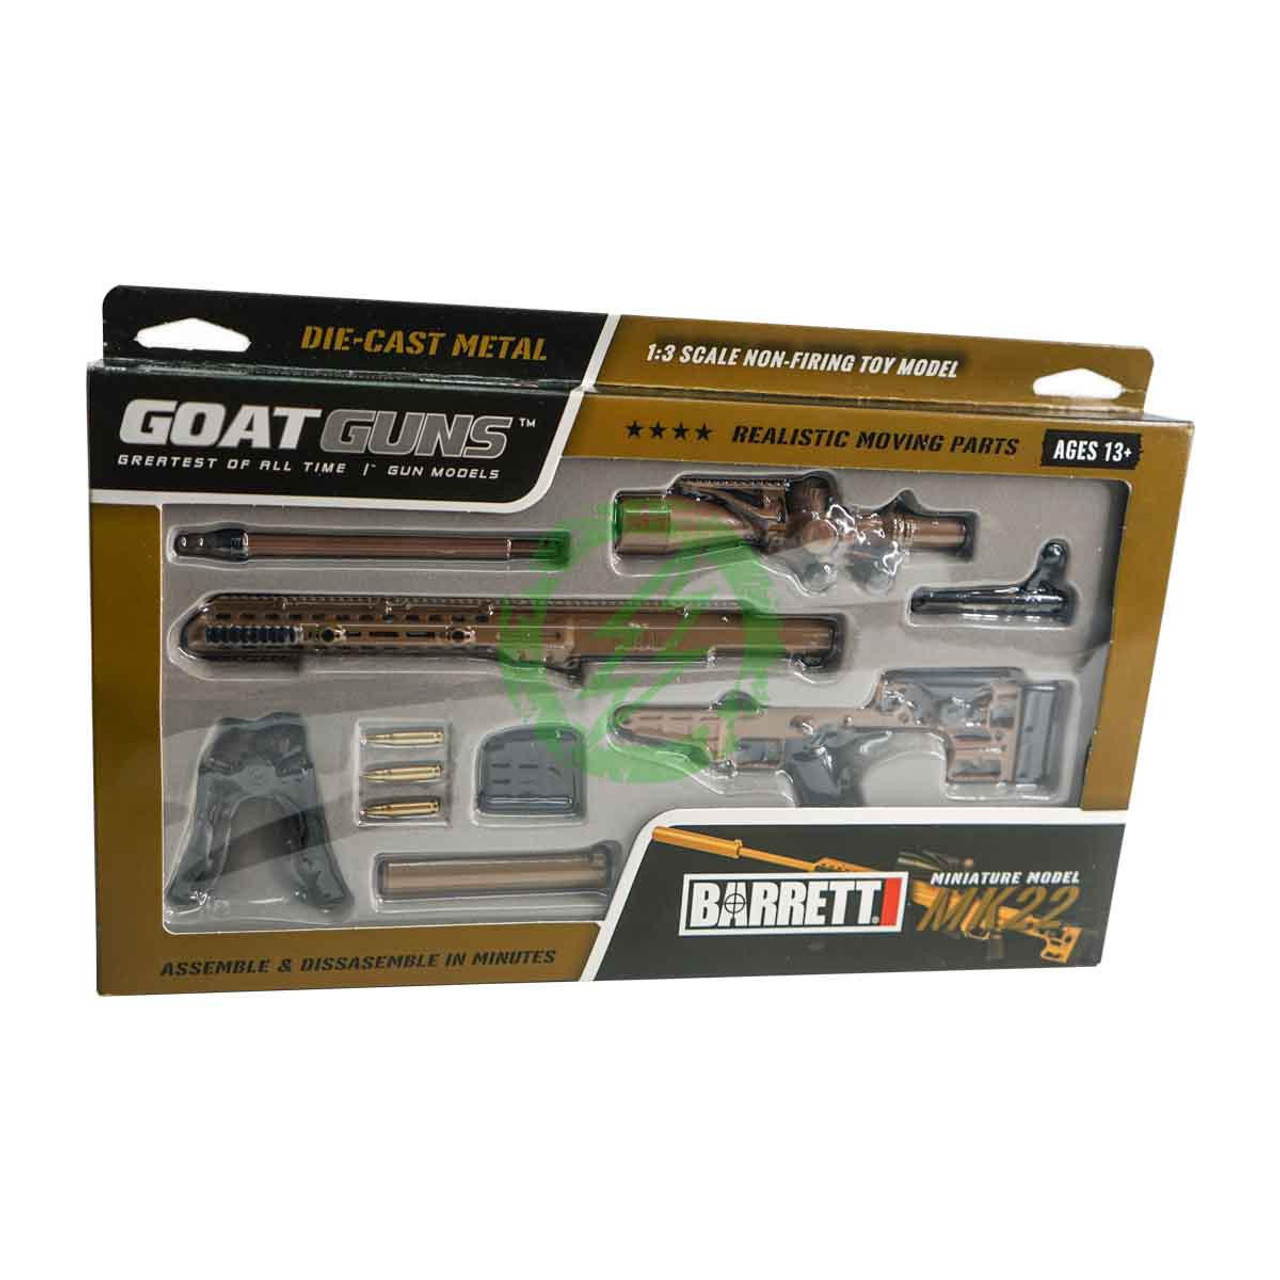  GOAT Guns Miniature Model Firearms Die Cast Metal Model 